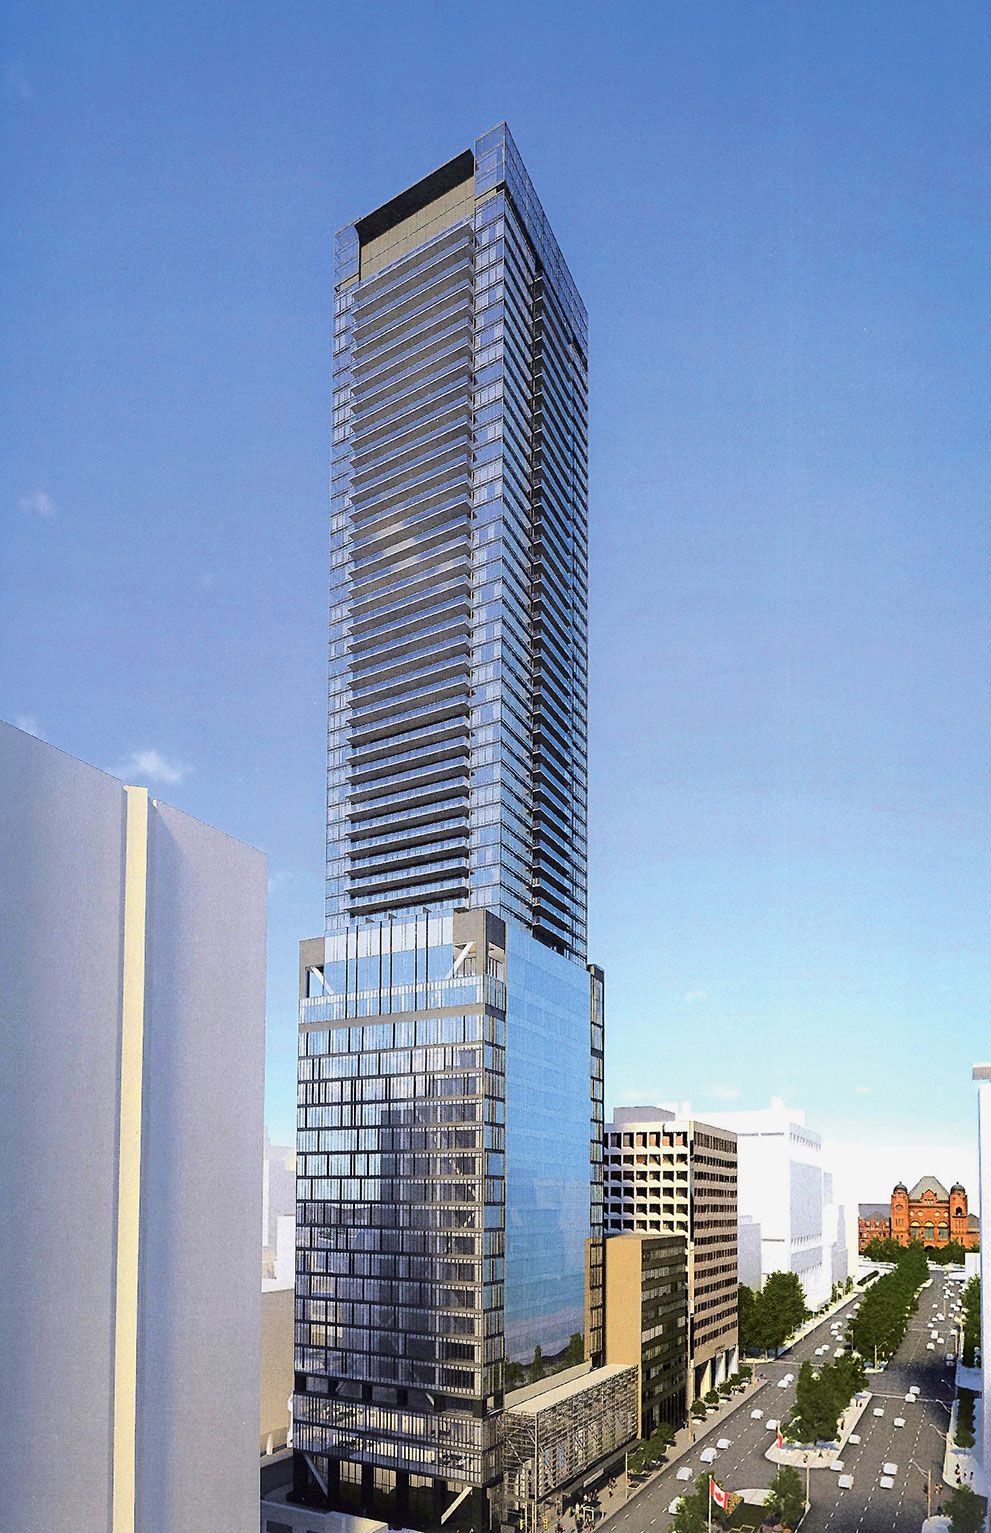 55 storey, 470 suite condominium with 4 levels of underground parking